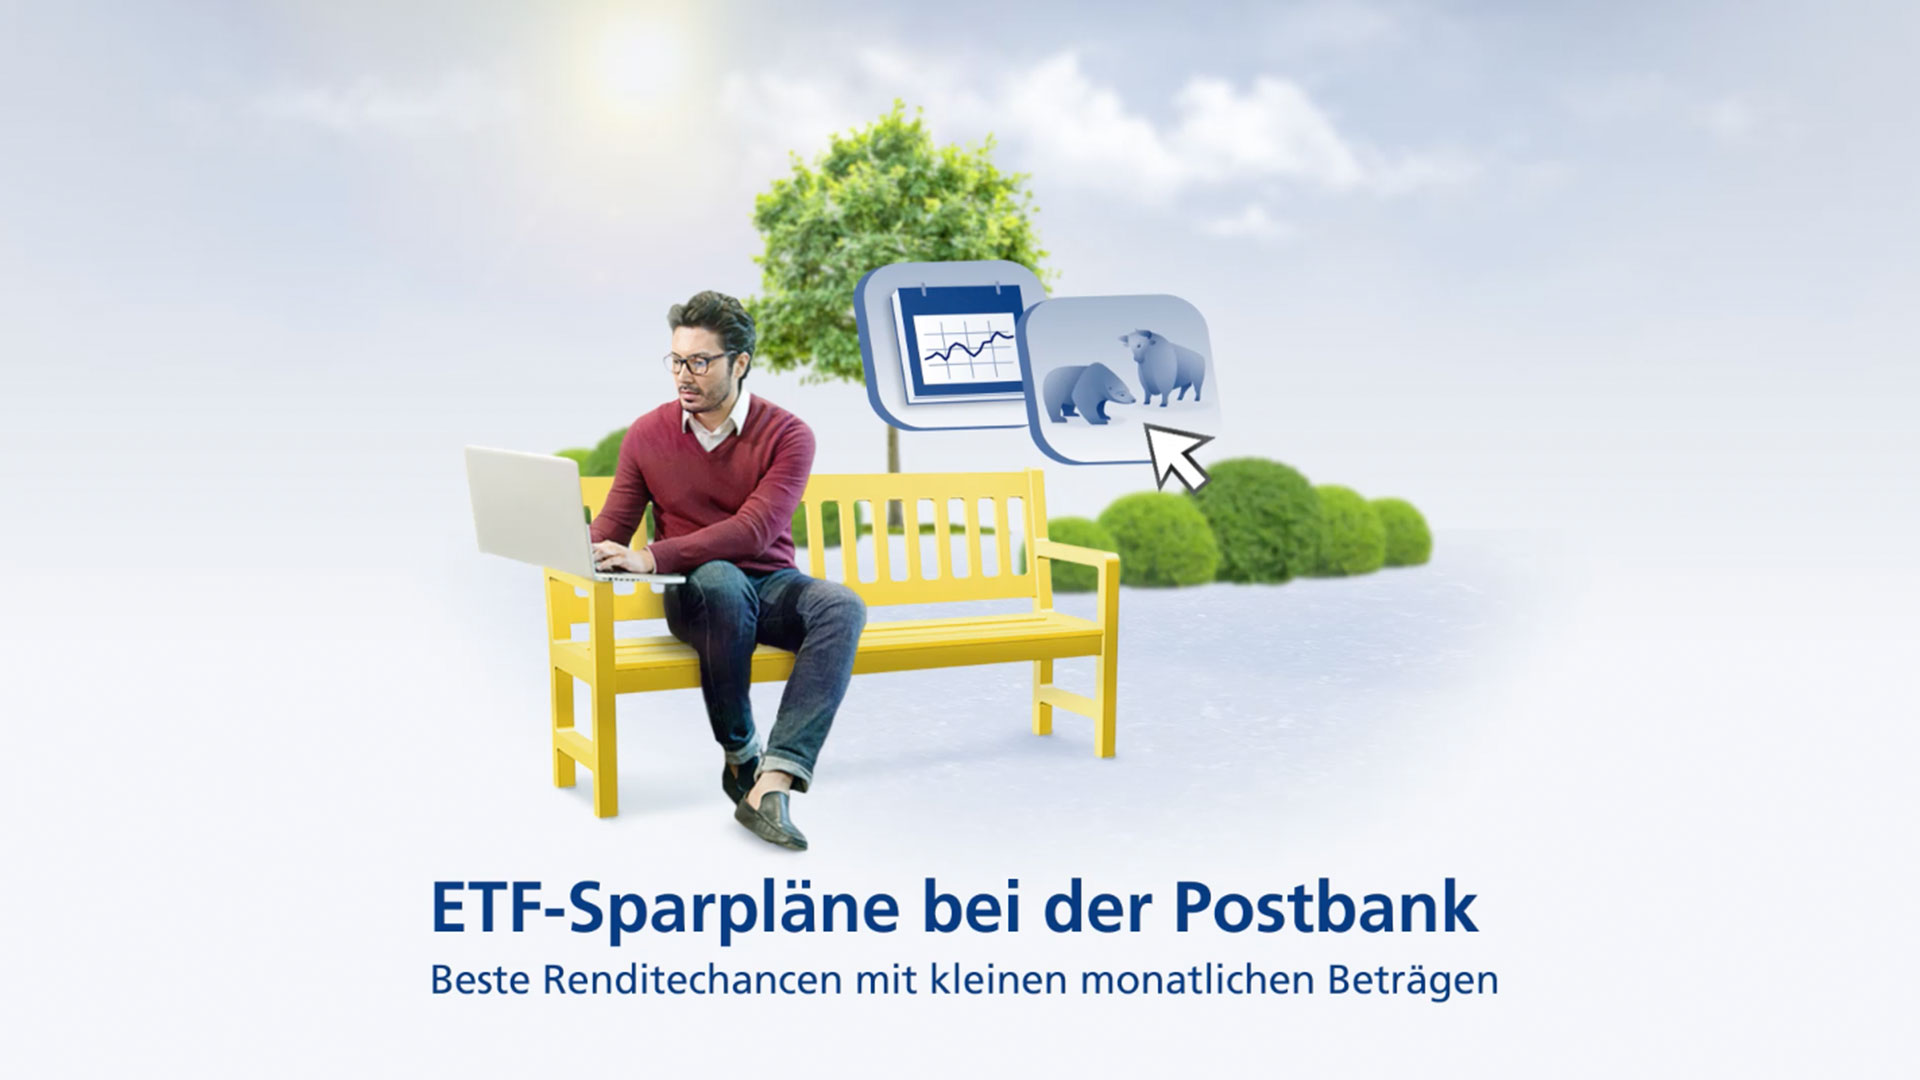 postbank-themenwelten-etf-sparplaene-video-1920x1080.jpg